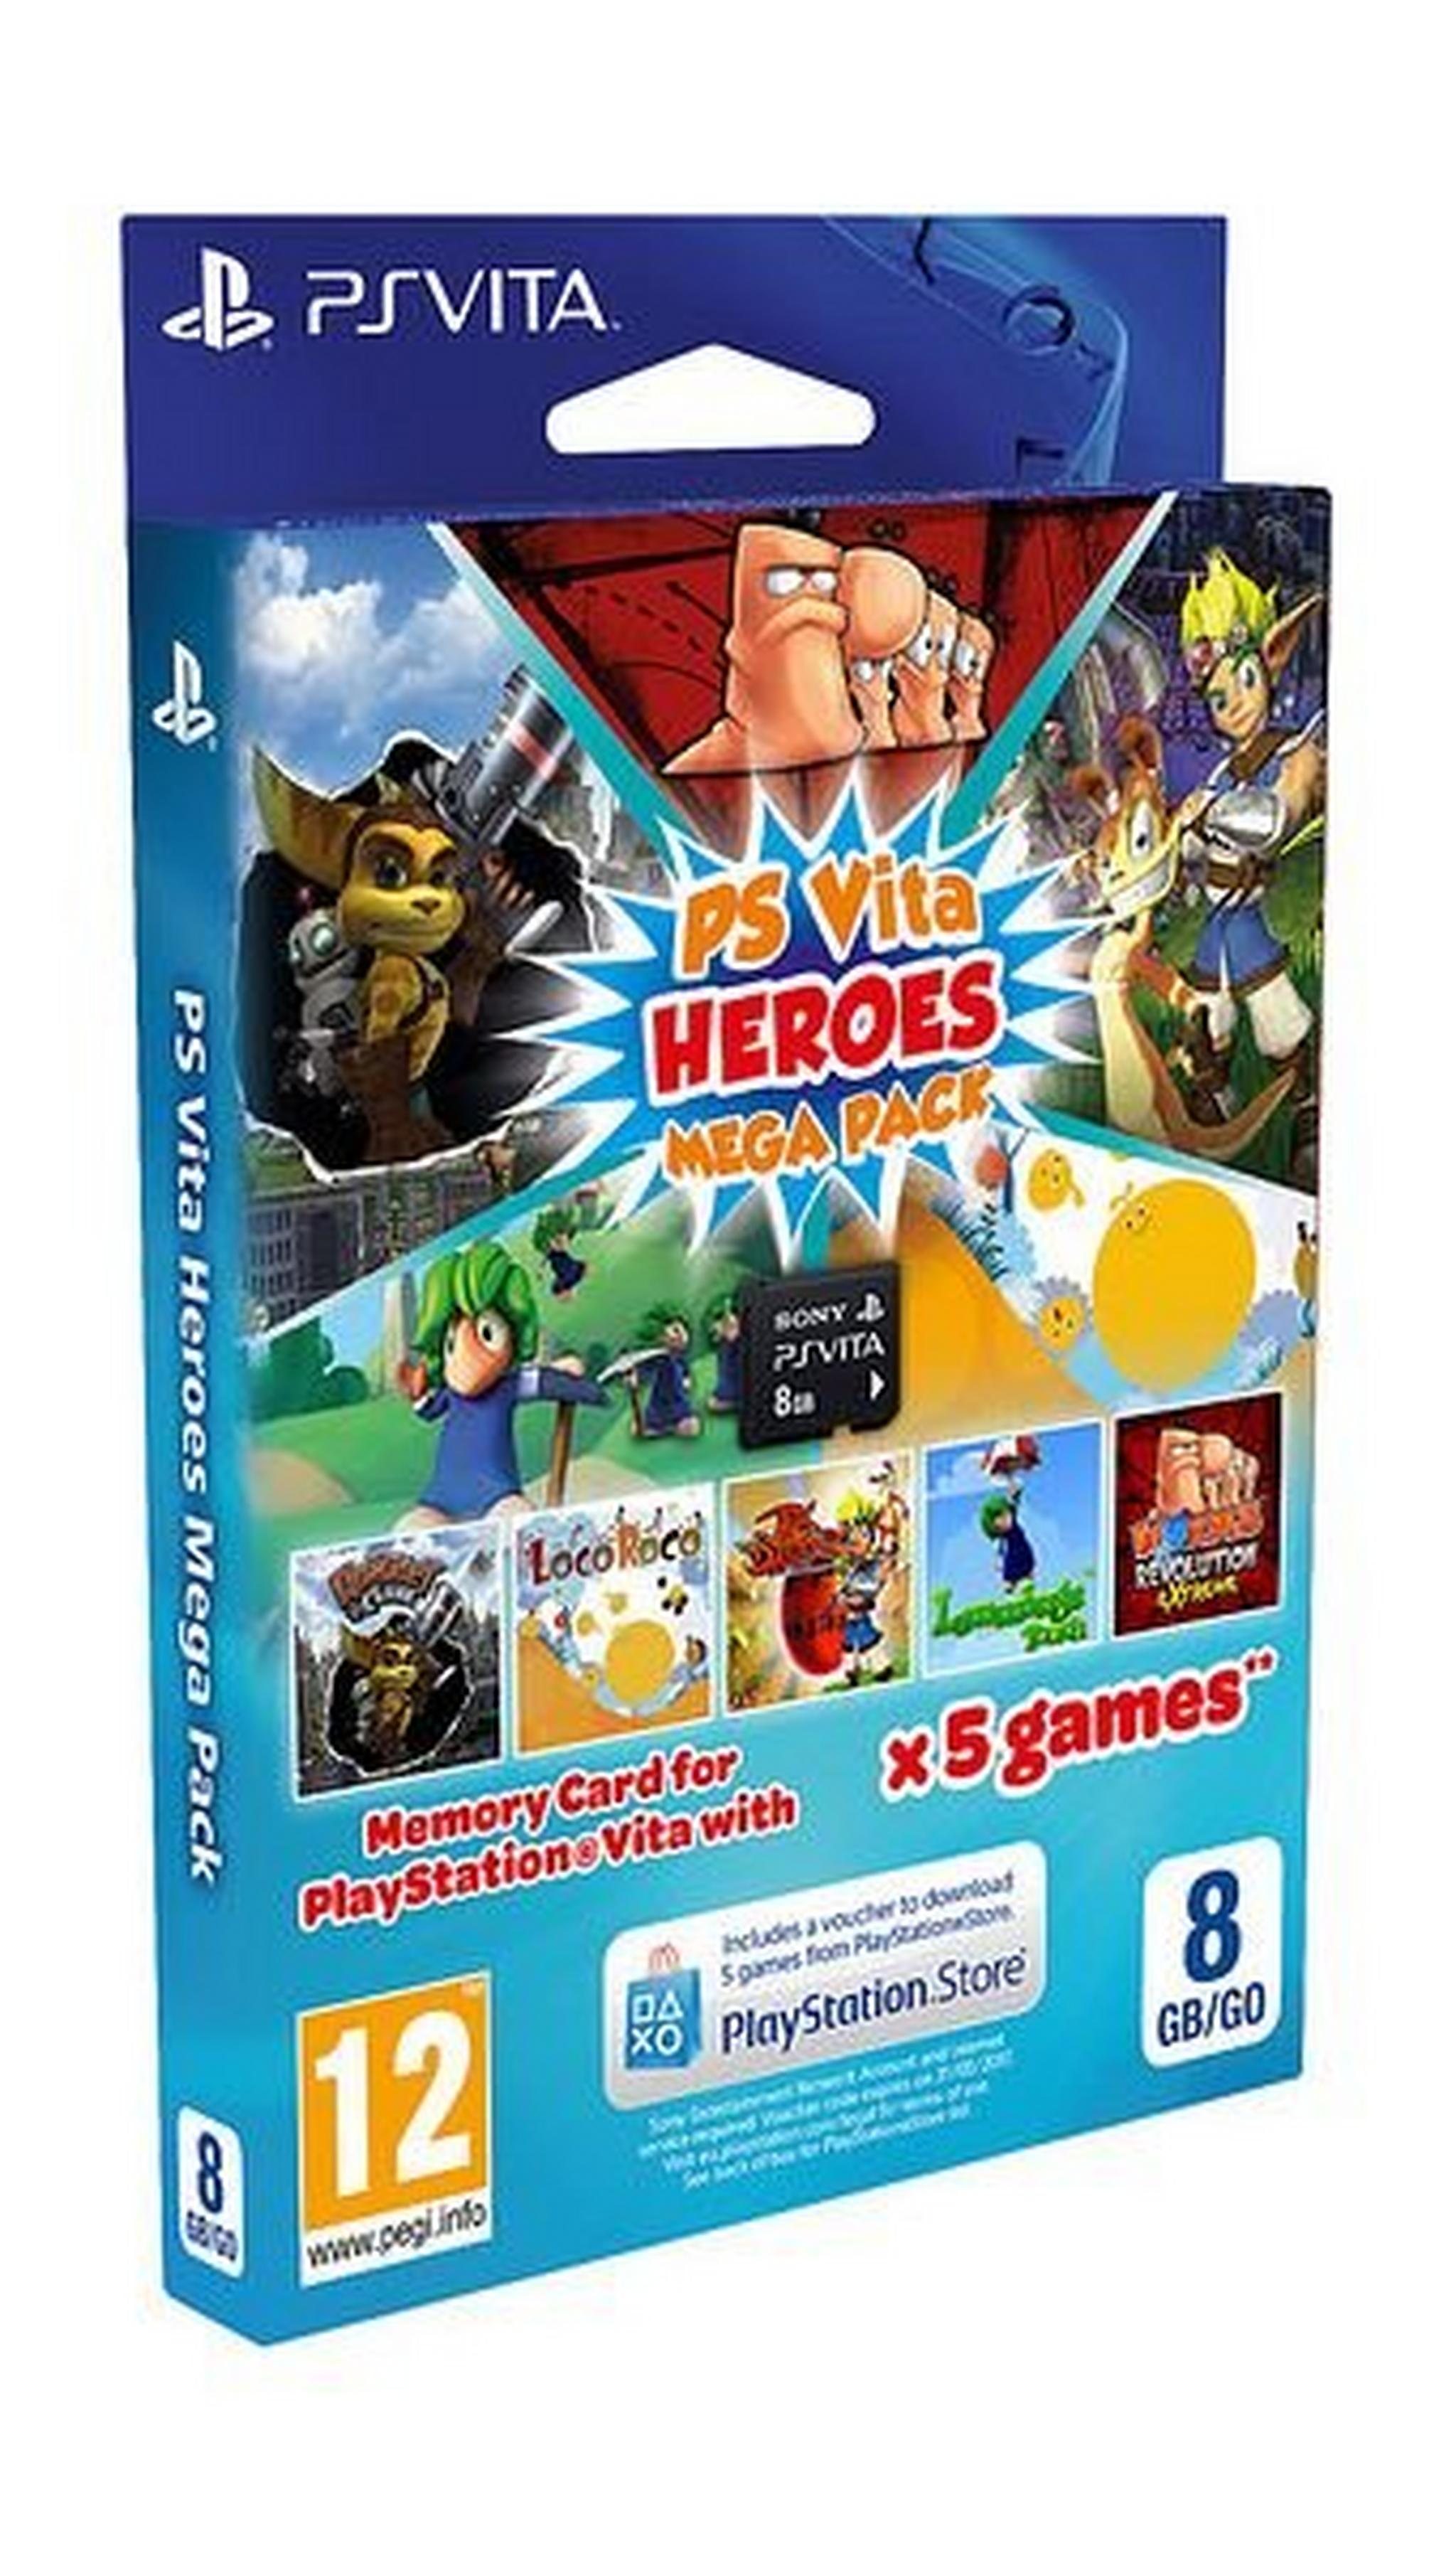 Heroes Mega Pack 8GB Memory Card for PlayStation Vita